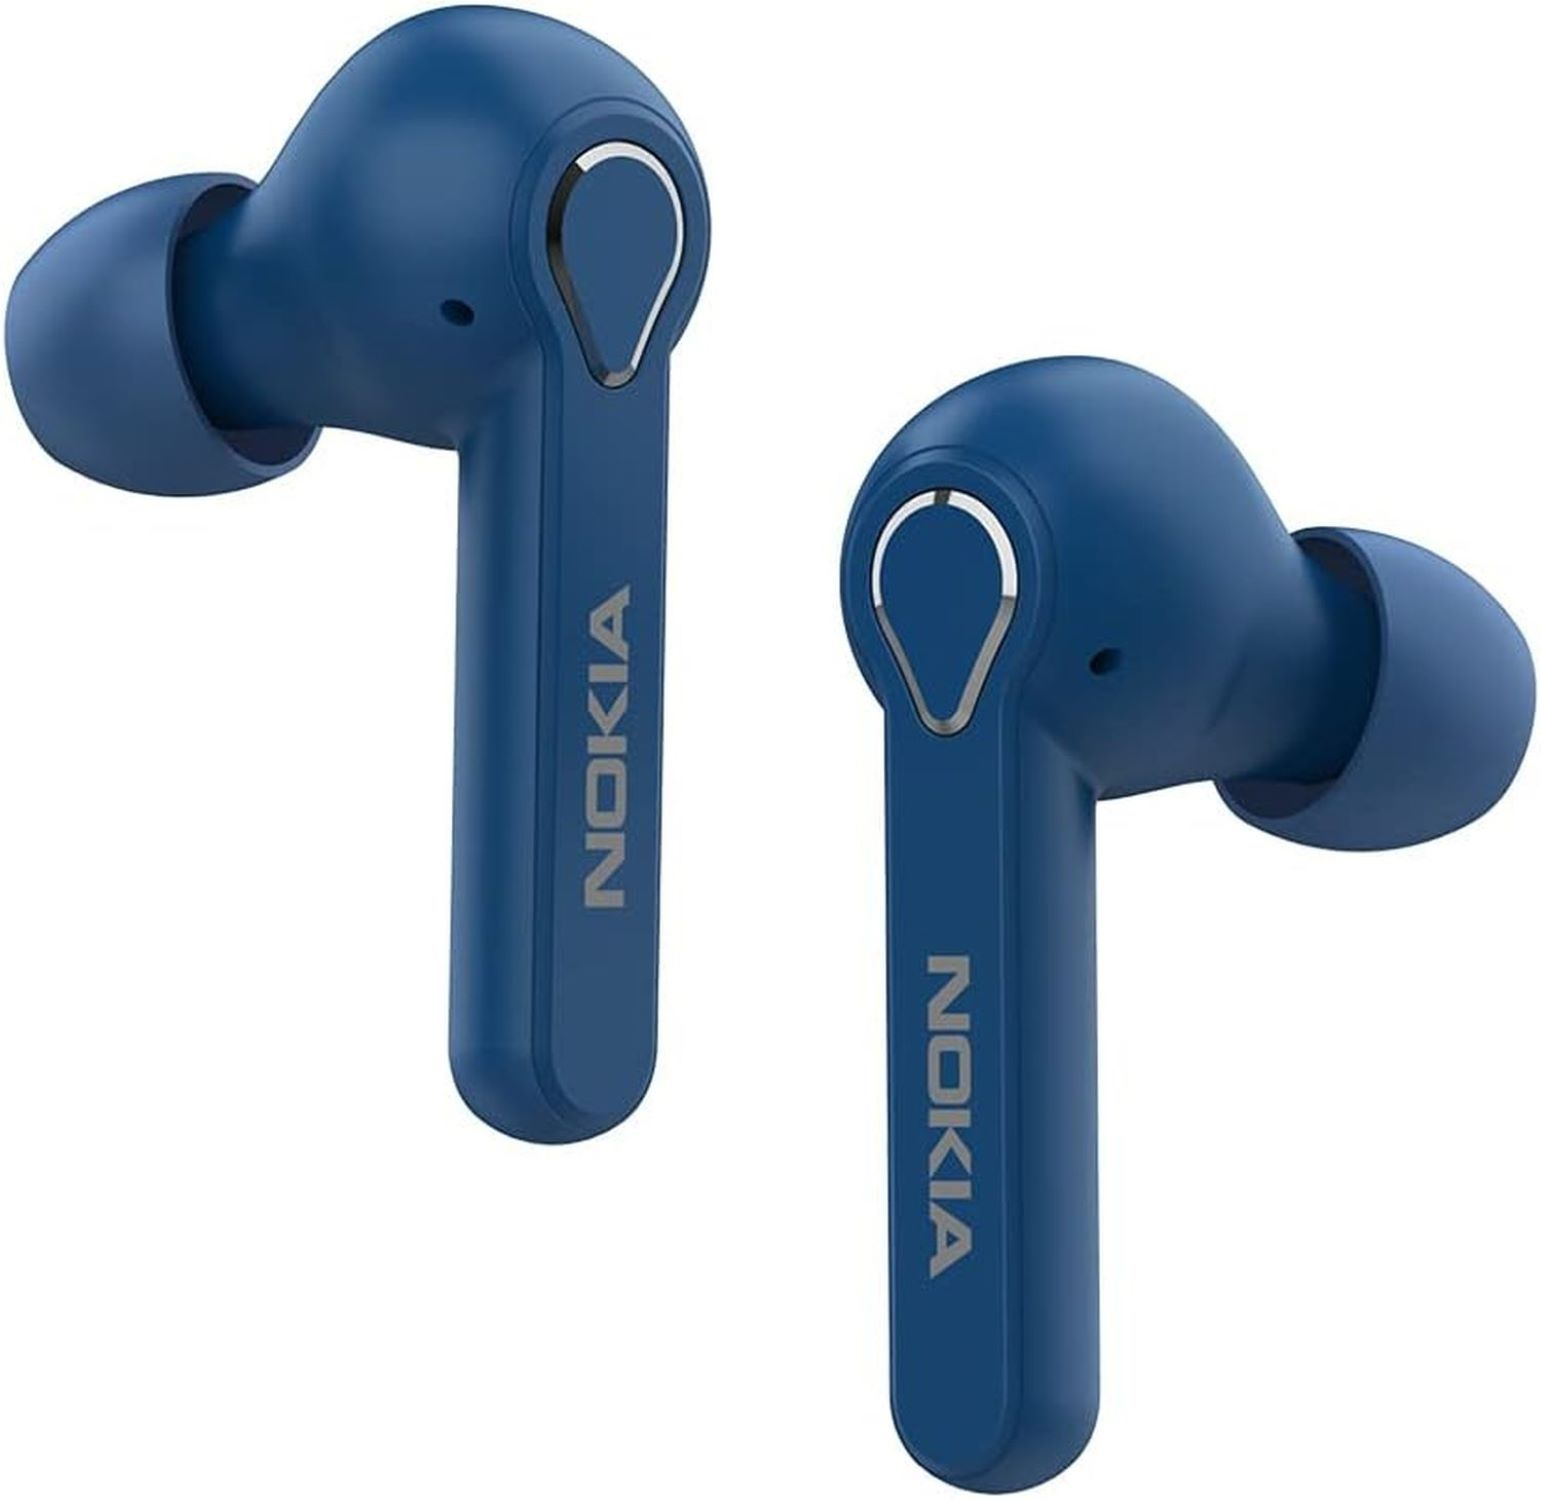 NOKIA BH-205, In-ear Bluetooth kopfhörer Blau